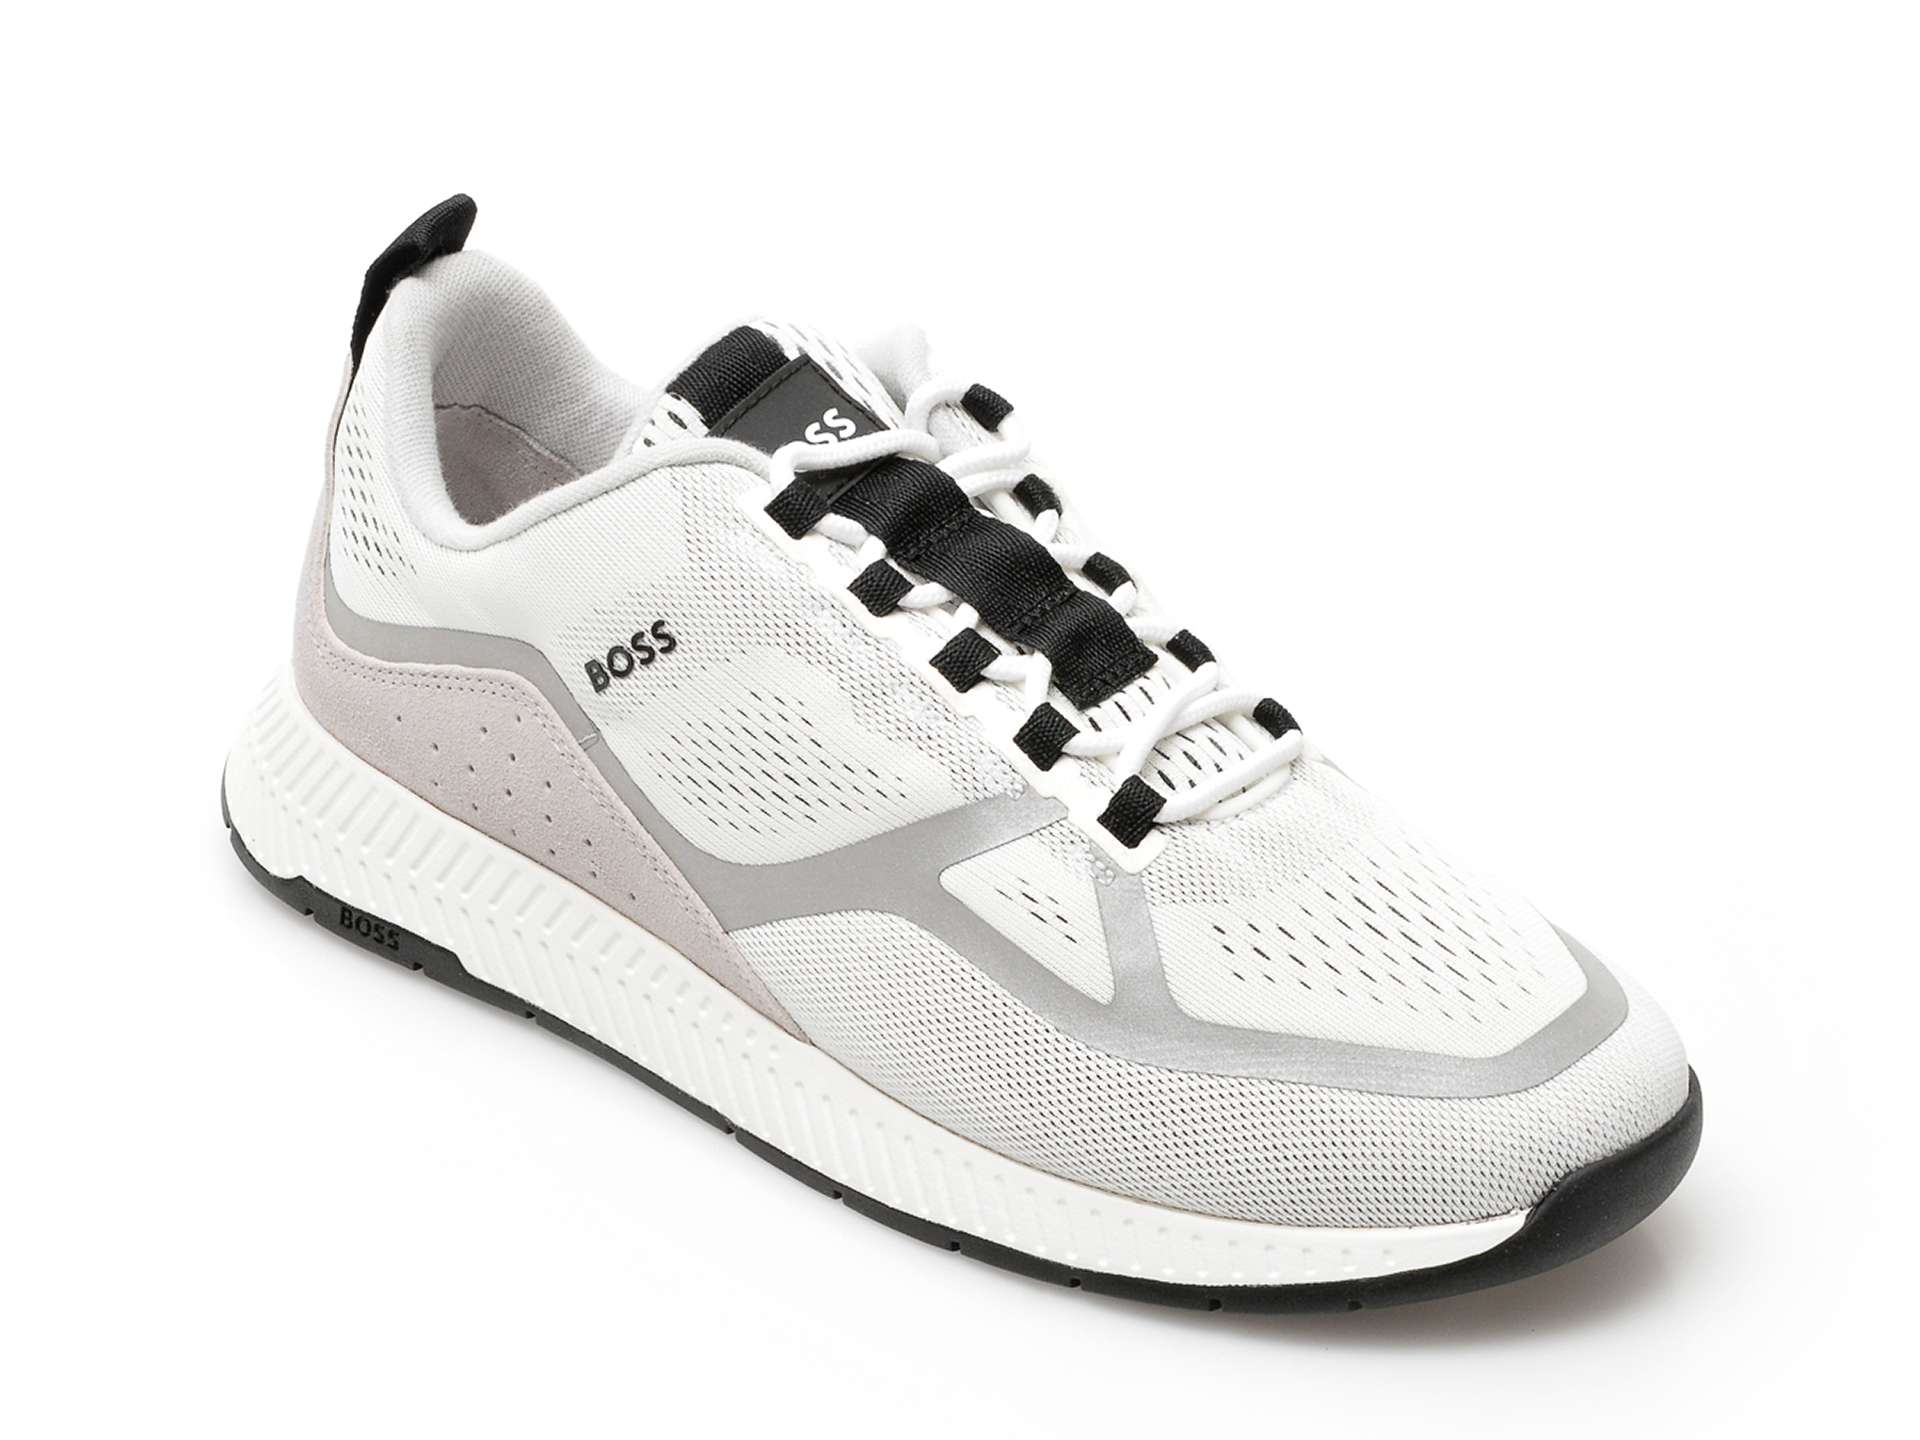 Pantofi sport HUGO BOSS albi, 622, din material textil Hugo Boss Hugo Boss